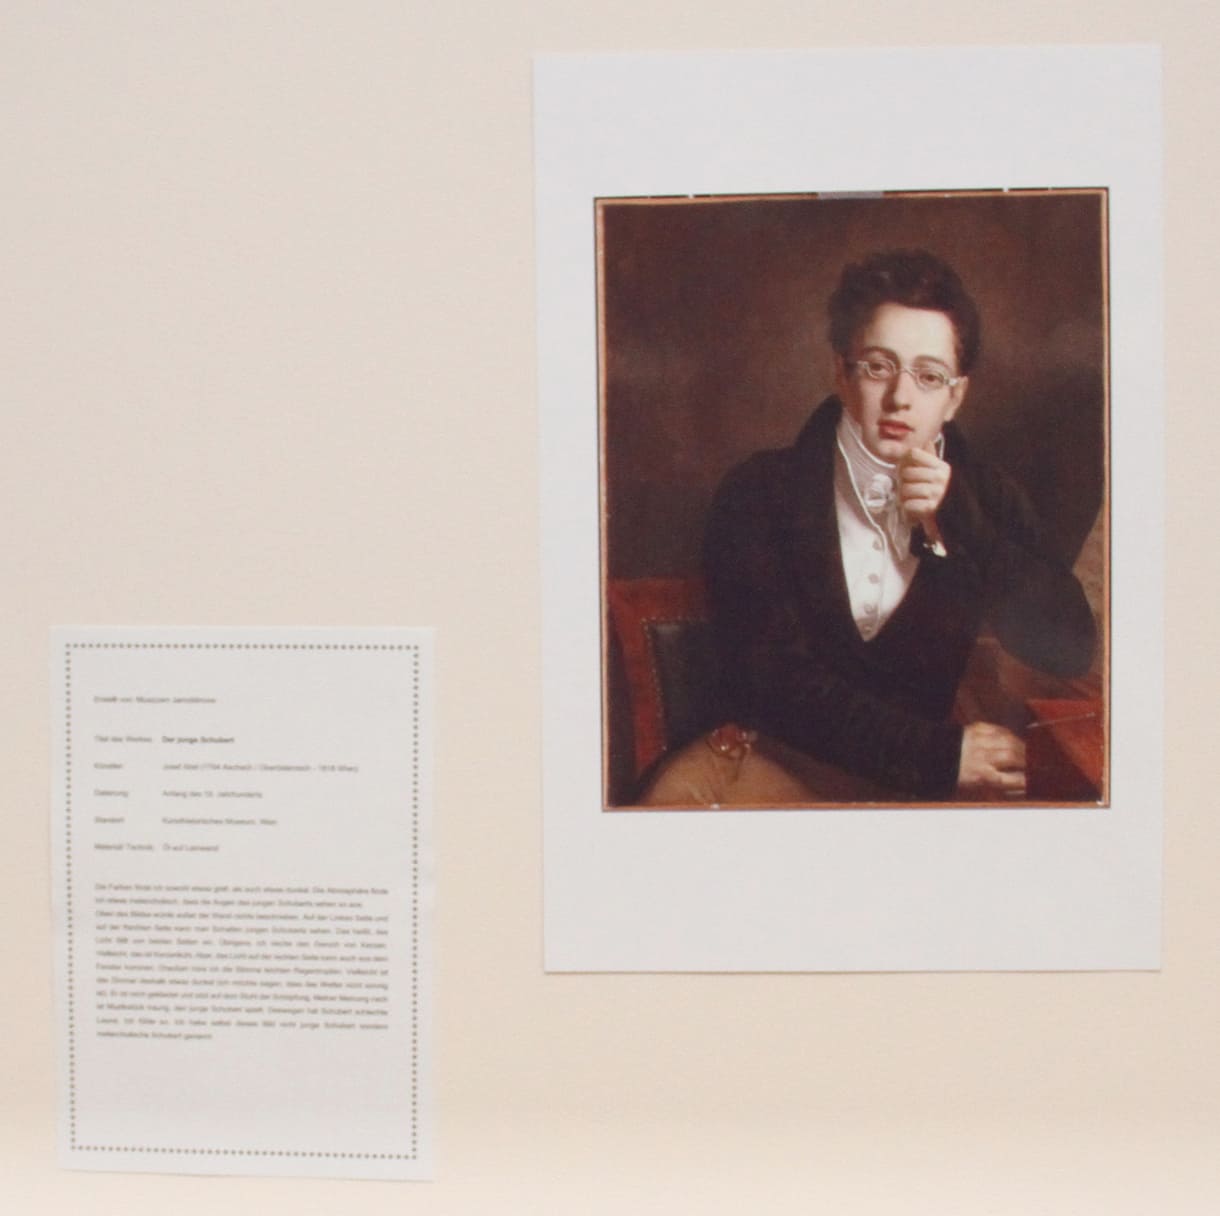 Aus der Aussstellung der Studierenden: Über den Komponisten Franz Schubert